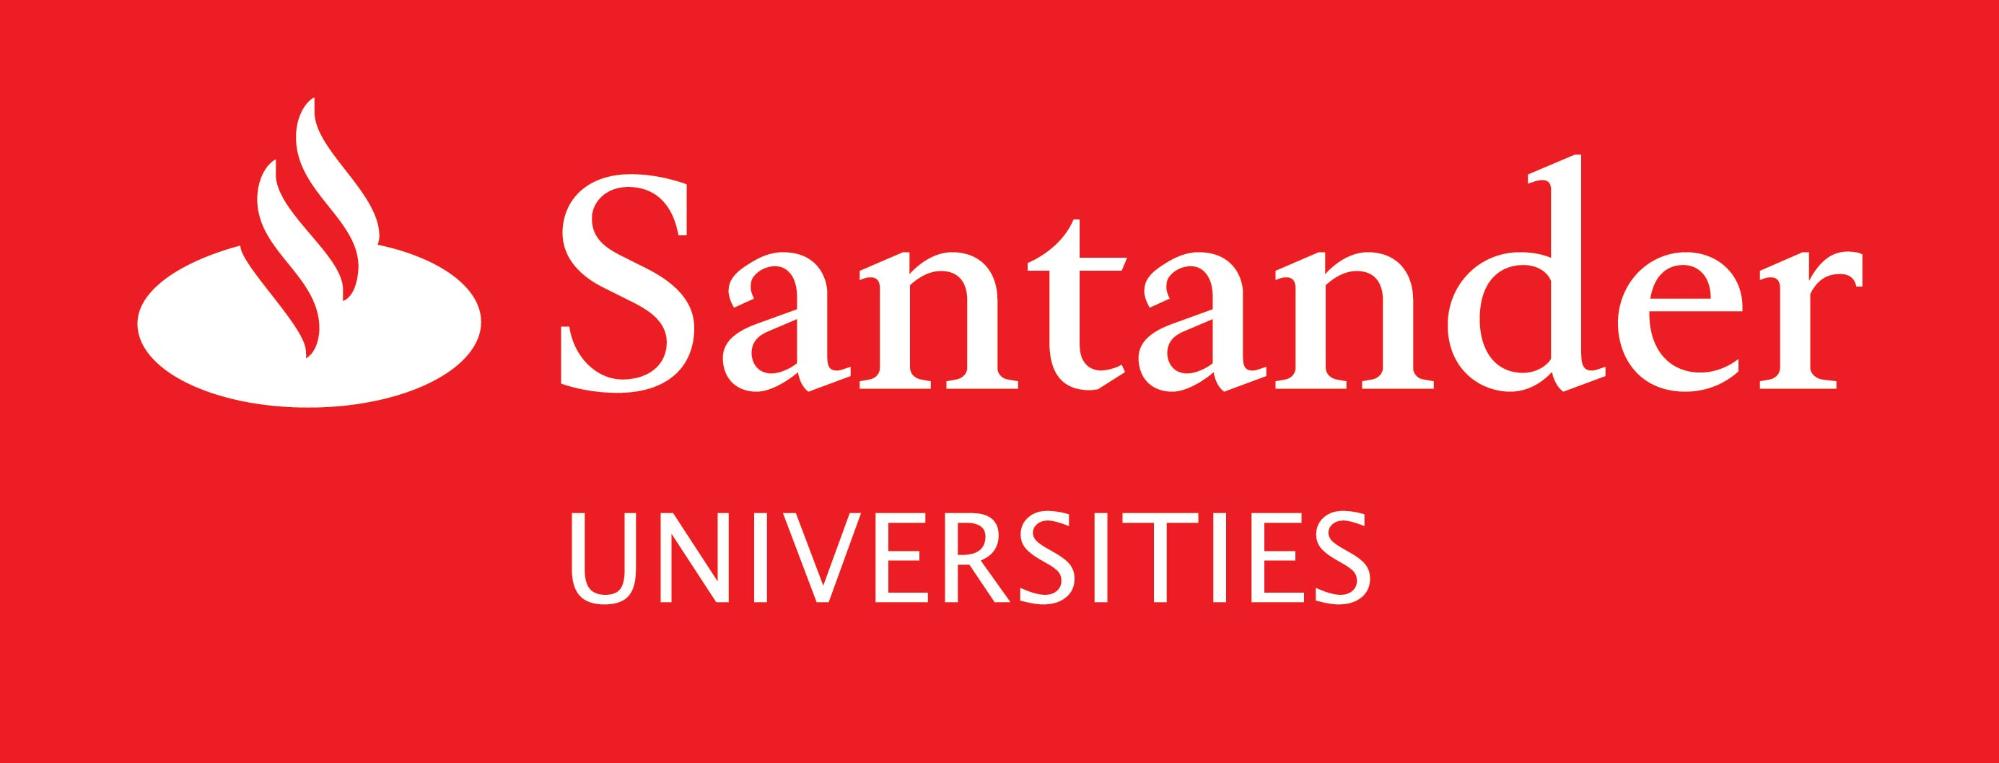 Santander Development And Alumni Relations Office Queen S University Belfast